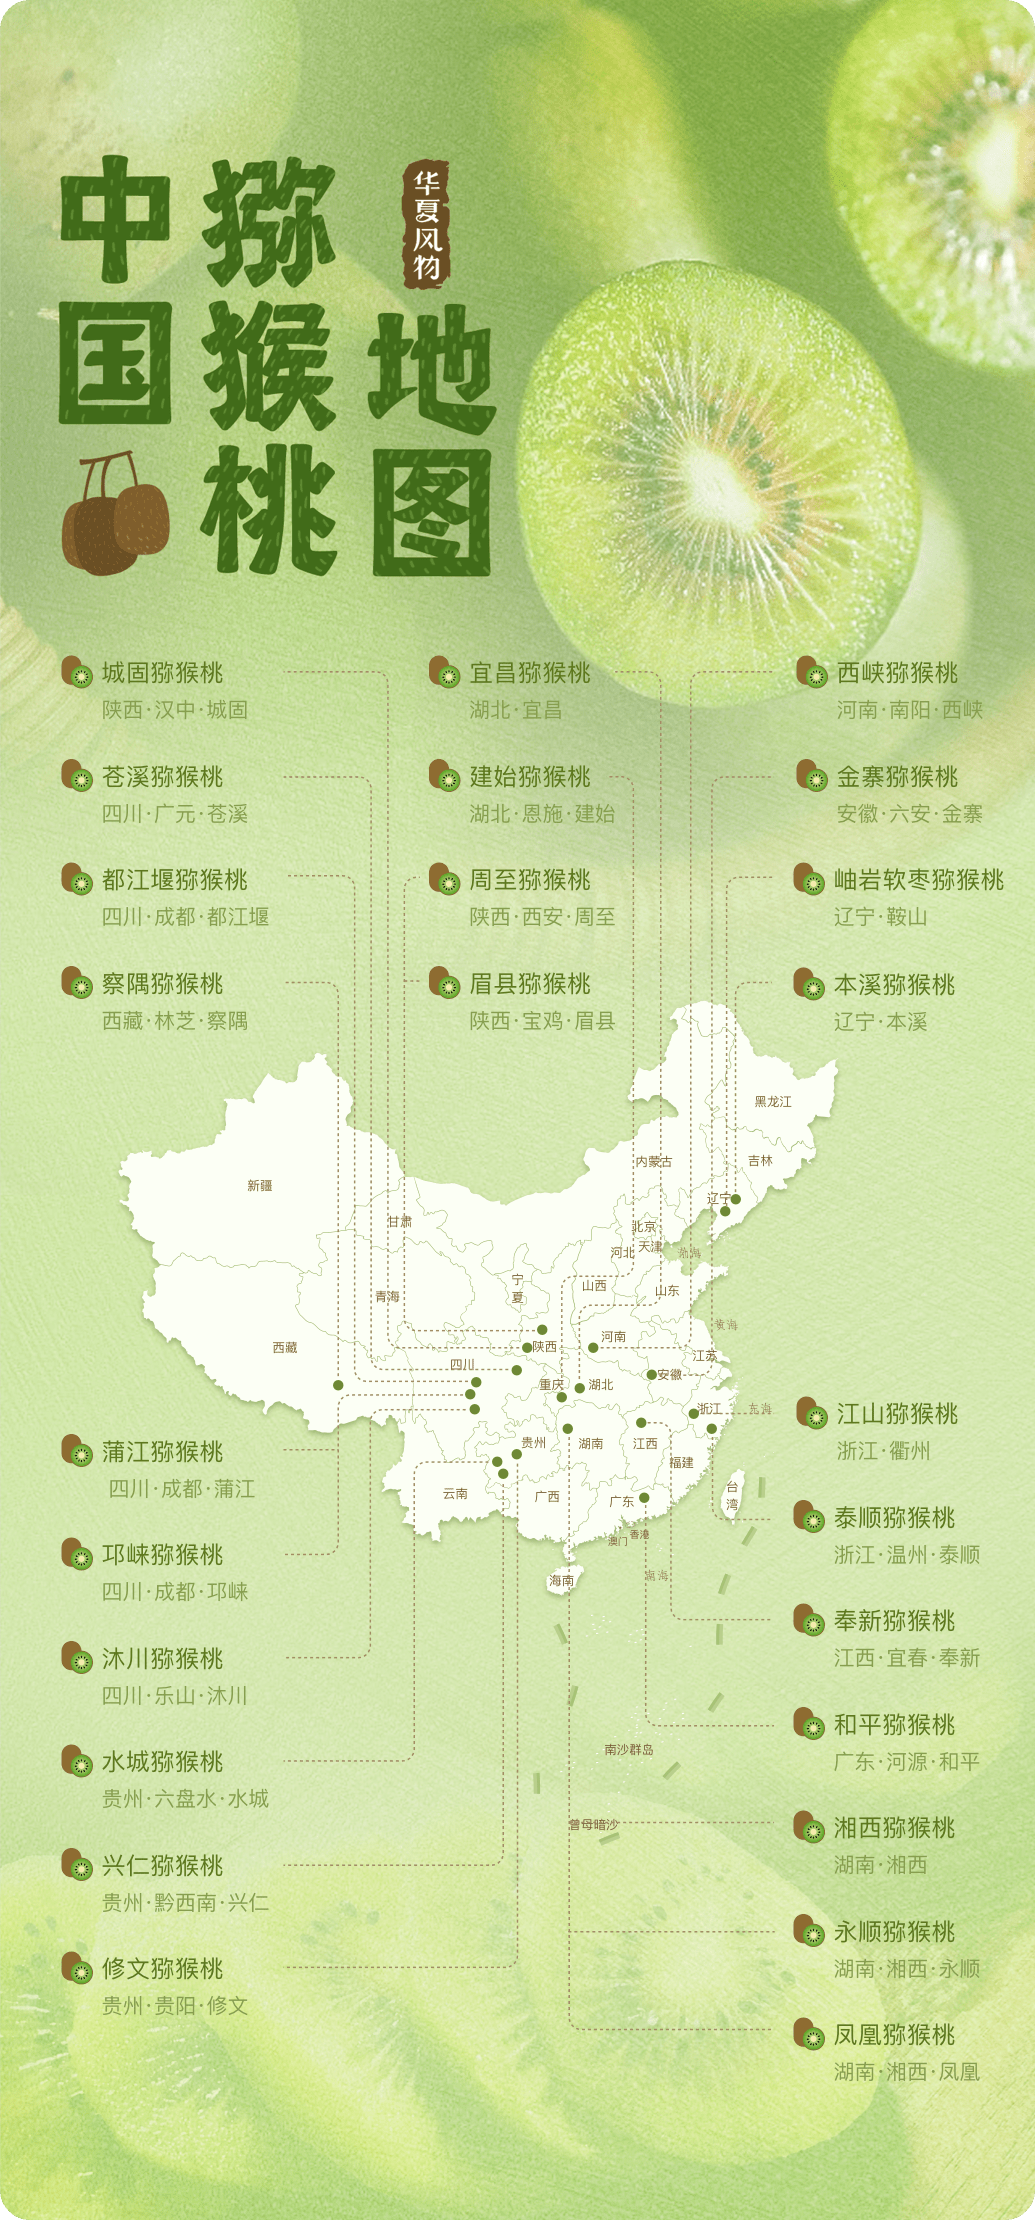 中国猕猴桃地图 ©️华夏风物